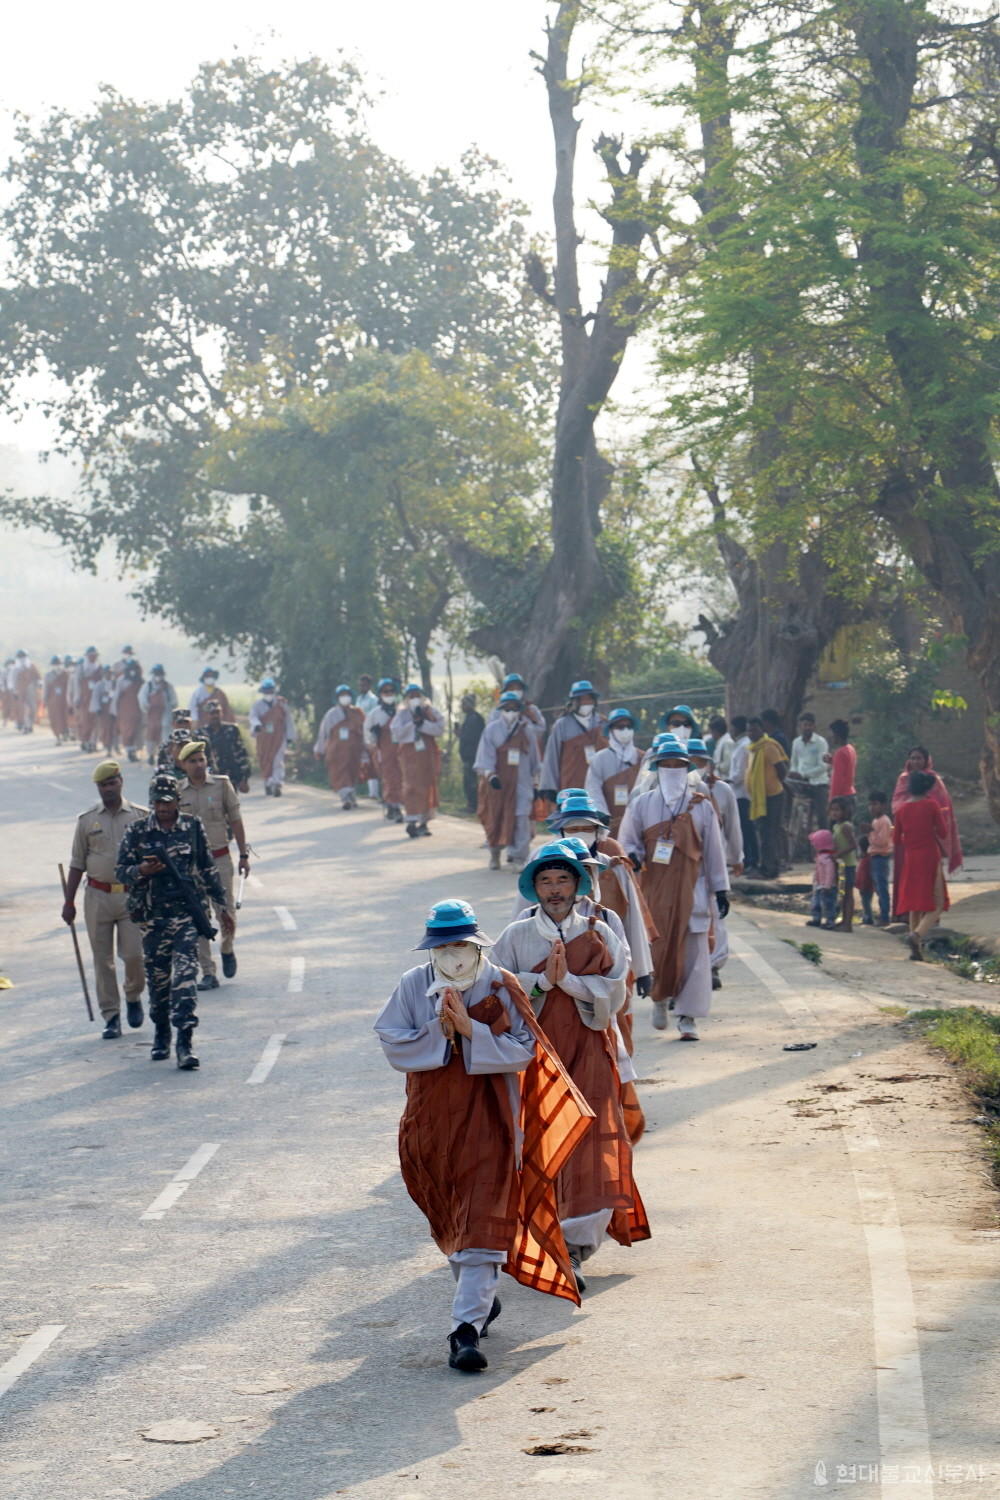  인도 카필라바스투인 피프라흐와로 다가갈 수록 경찰 측의 엄호가 더해졌다. 피프라흐와로 가는 순례단을 마을주민들이 지켜보고 있다.